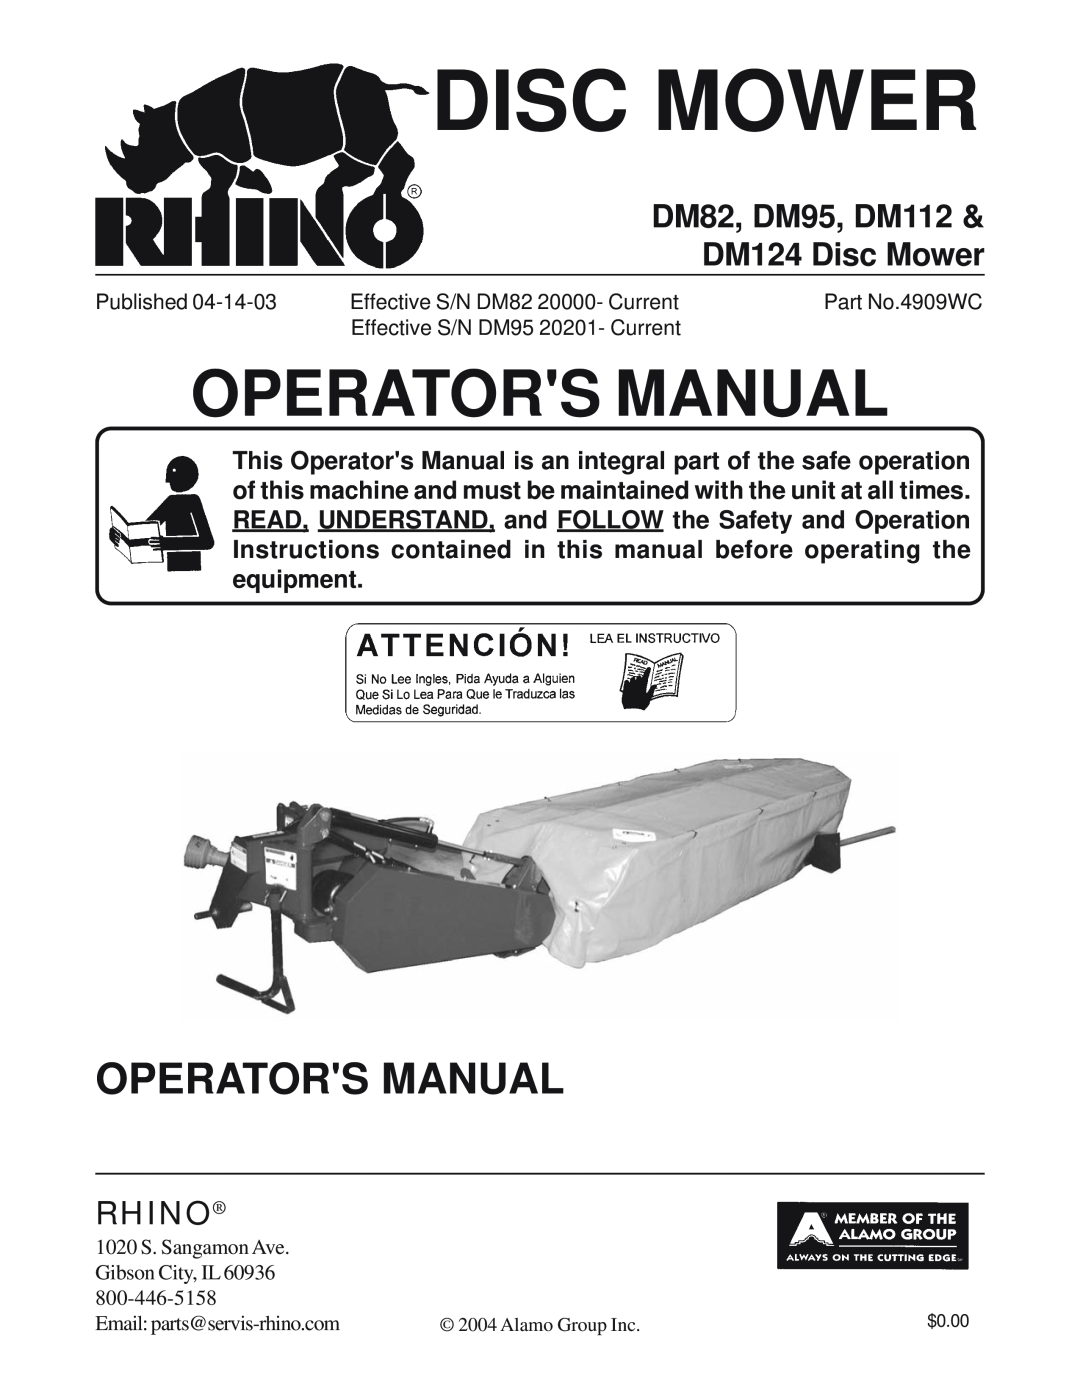 Servis-Rhino manual Operators Manual, DM82, DM95, DM112 & DM124 Disc Mower, Rhino 